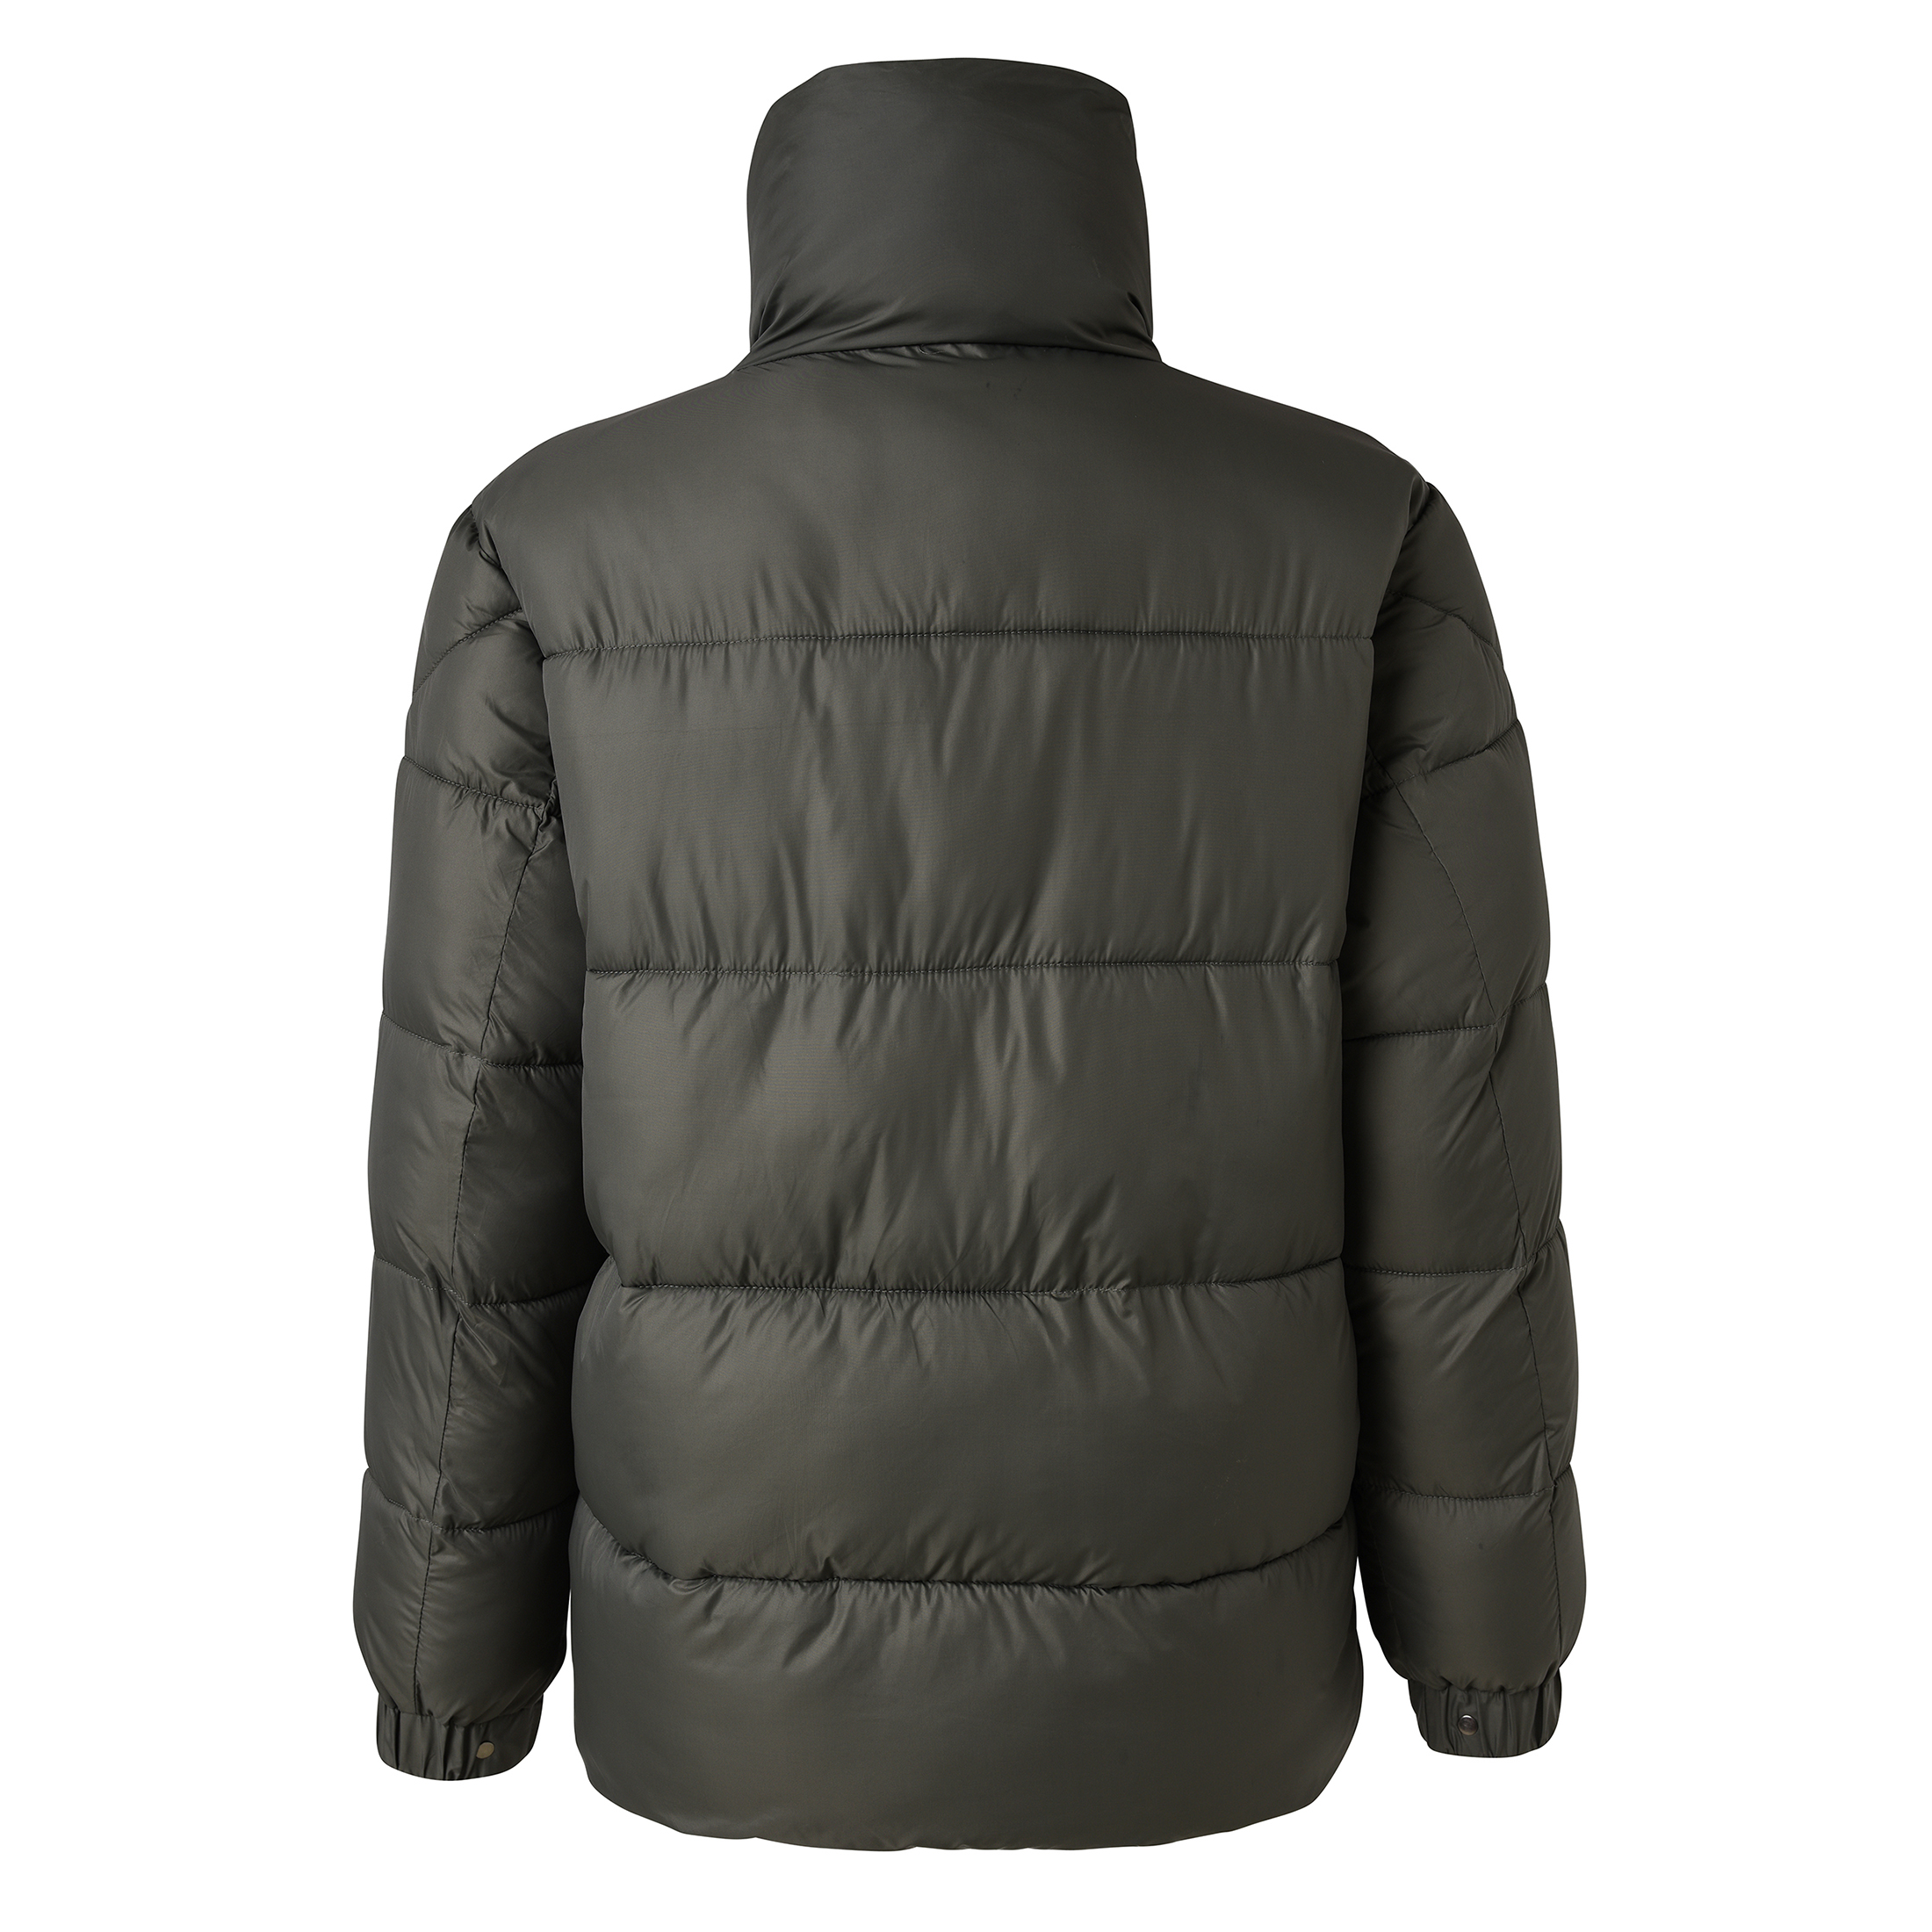 Wholesale Men's Winter Warm Havey Padding Jacket Nylon Fabric Jacket Classic Style Jacket